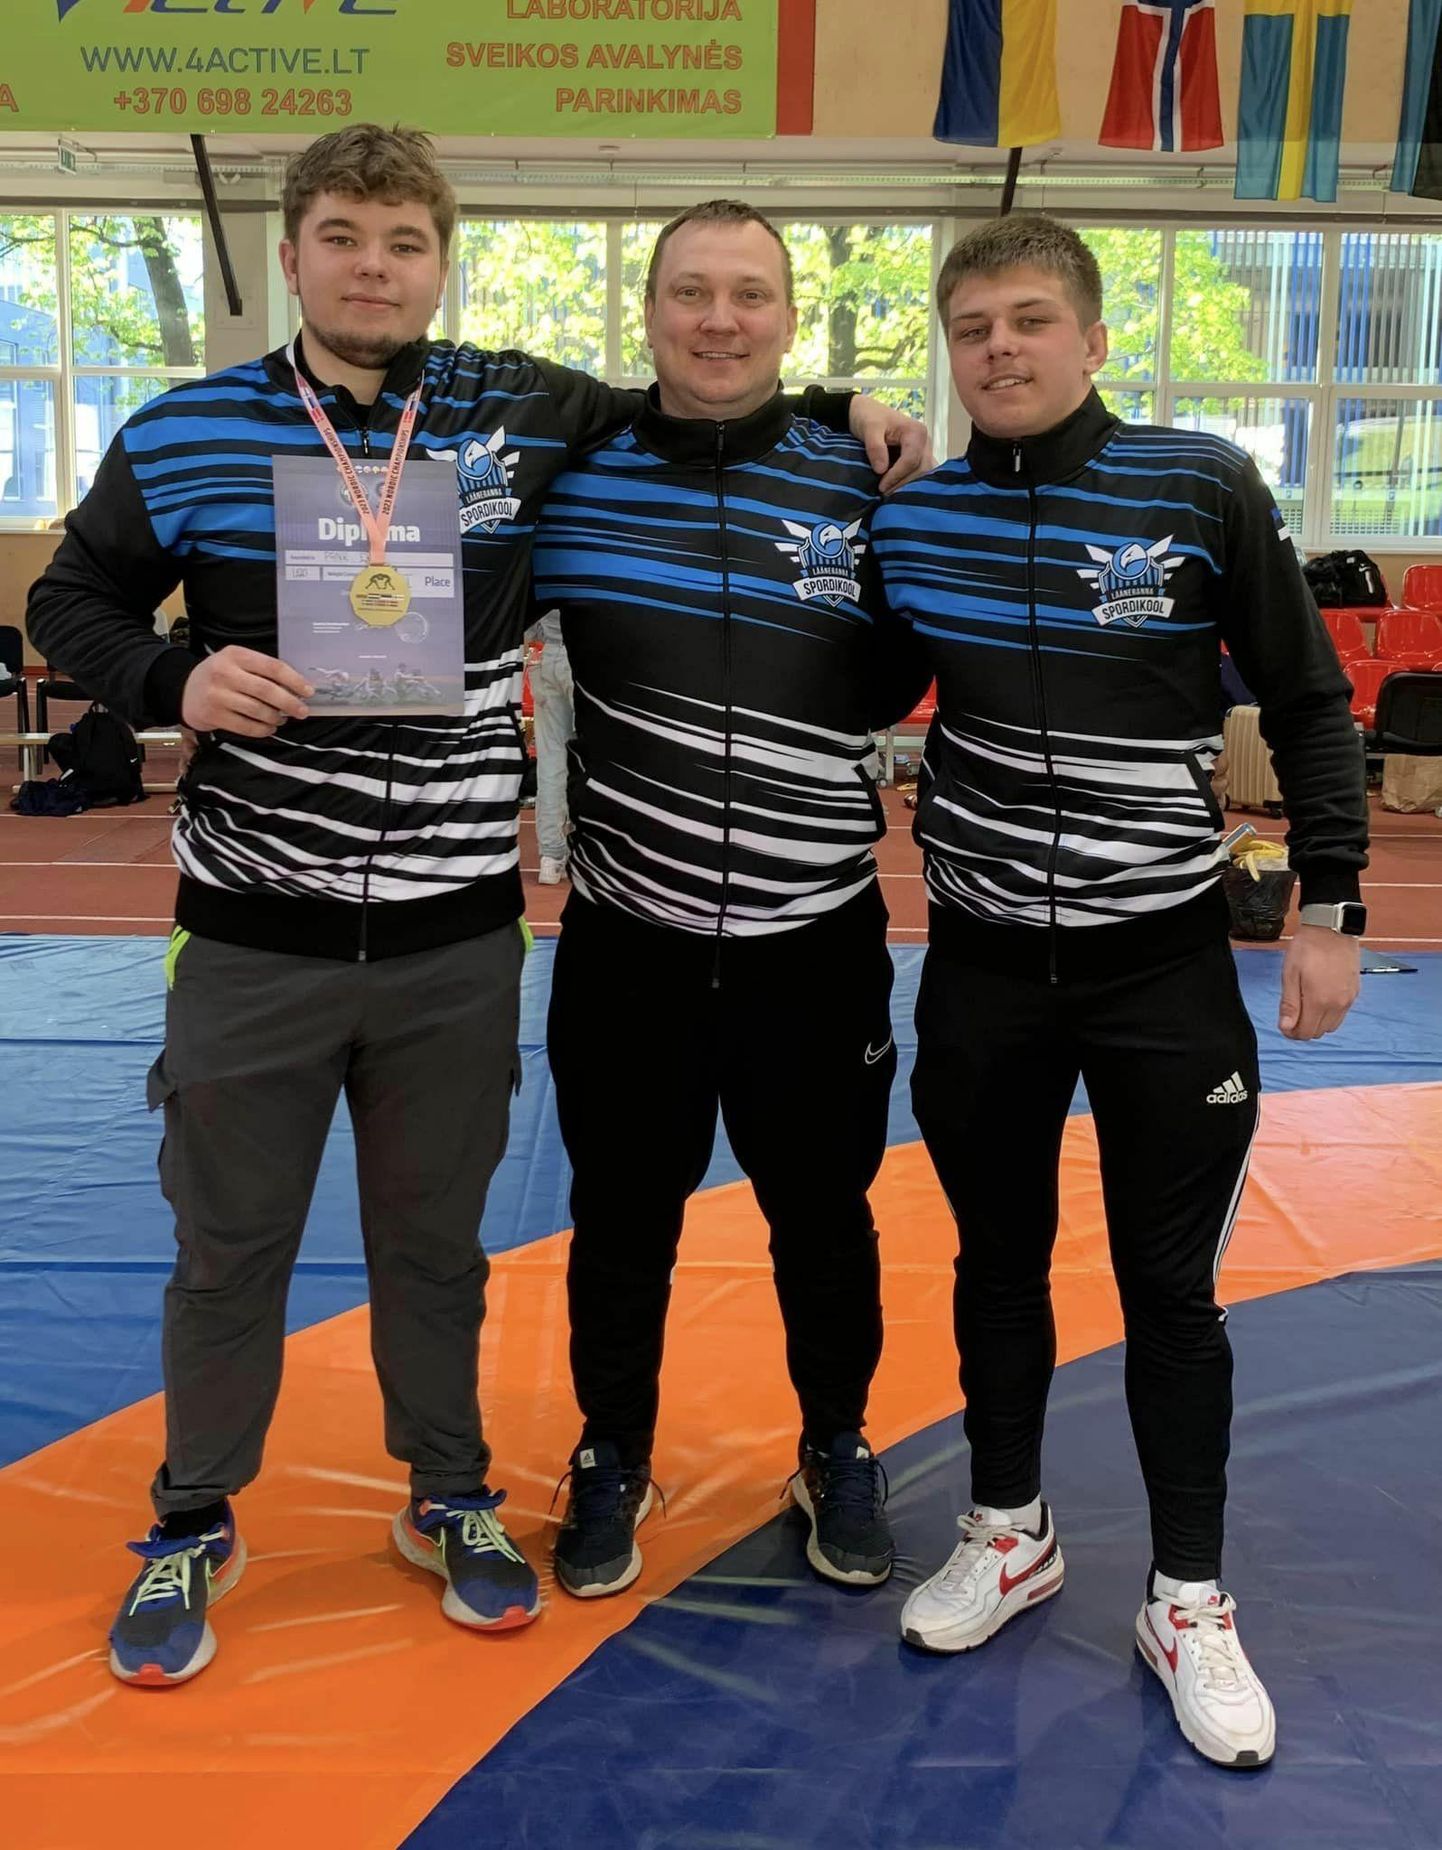 Lääneranna spordikooli tiim Leedus: Eerik Pank (vasakult), treener Janar Sõber ja Stefan-Lauri Mölder.